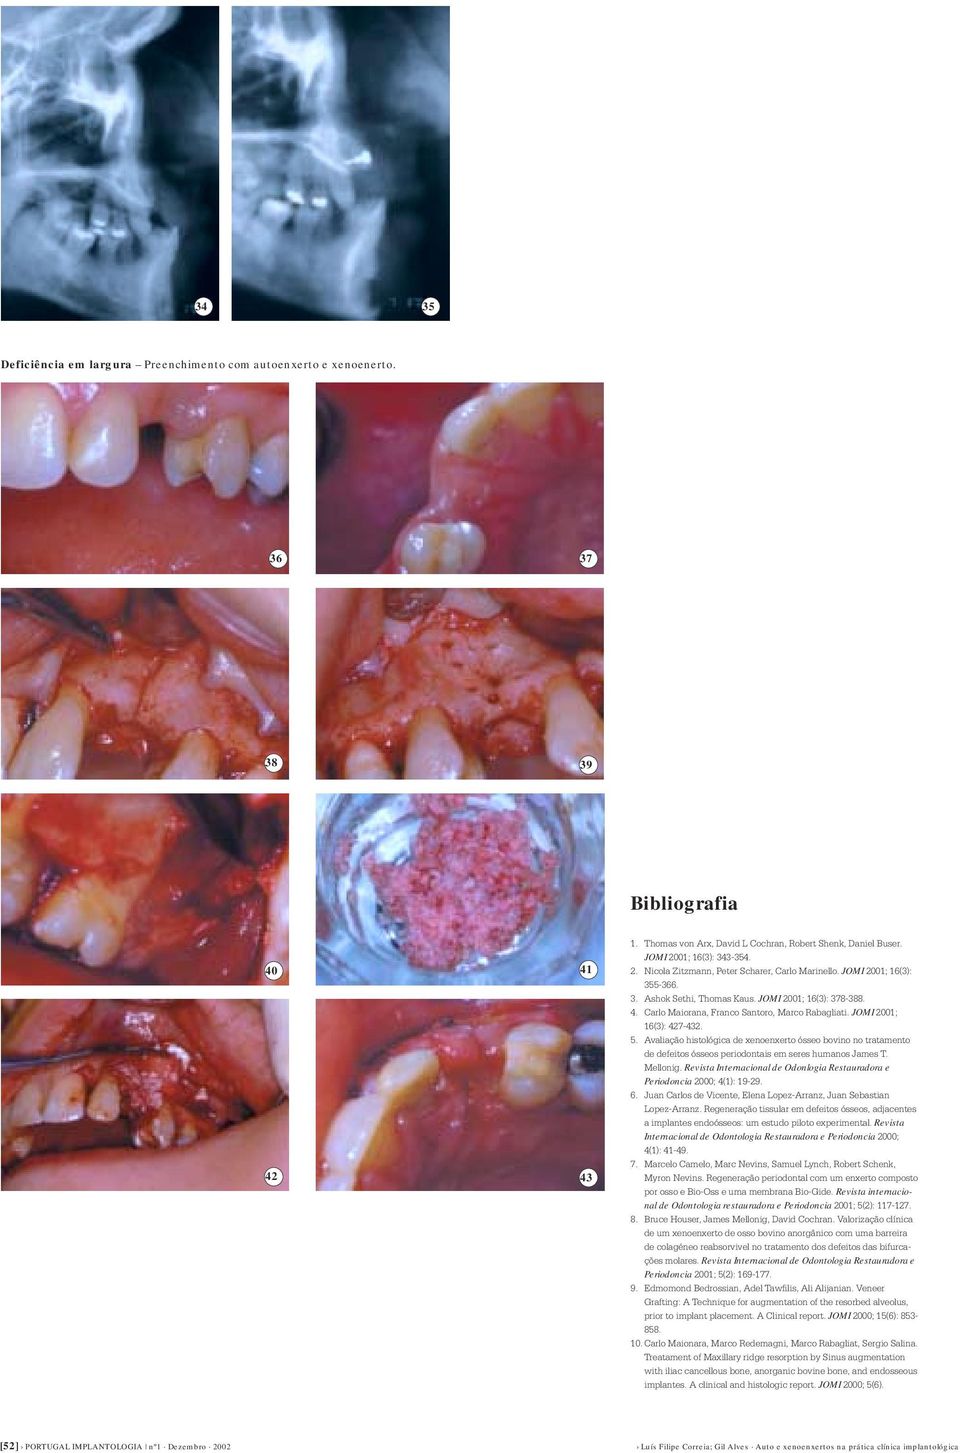 JOMI 2001; 16(3): 427-432. 5. Avaliação histológica de xenoenxerto ósseo bovino no tratamento de defeitos ósseos periodontais em seres humanos James T. Mellonig.